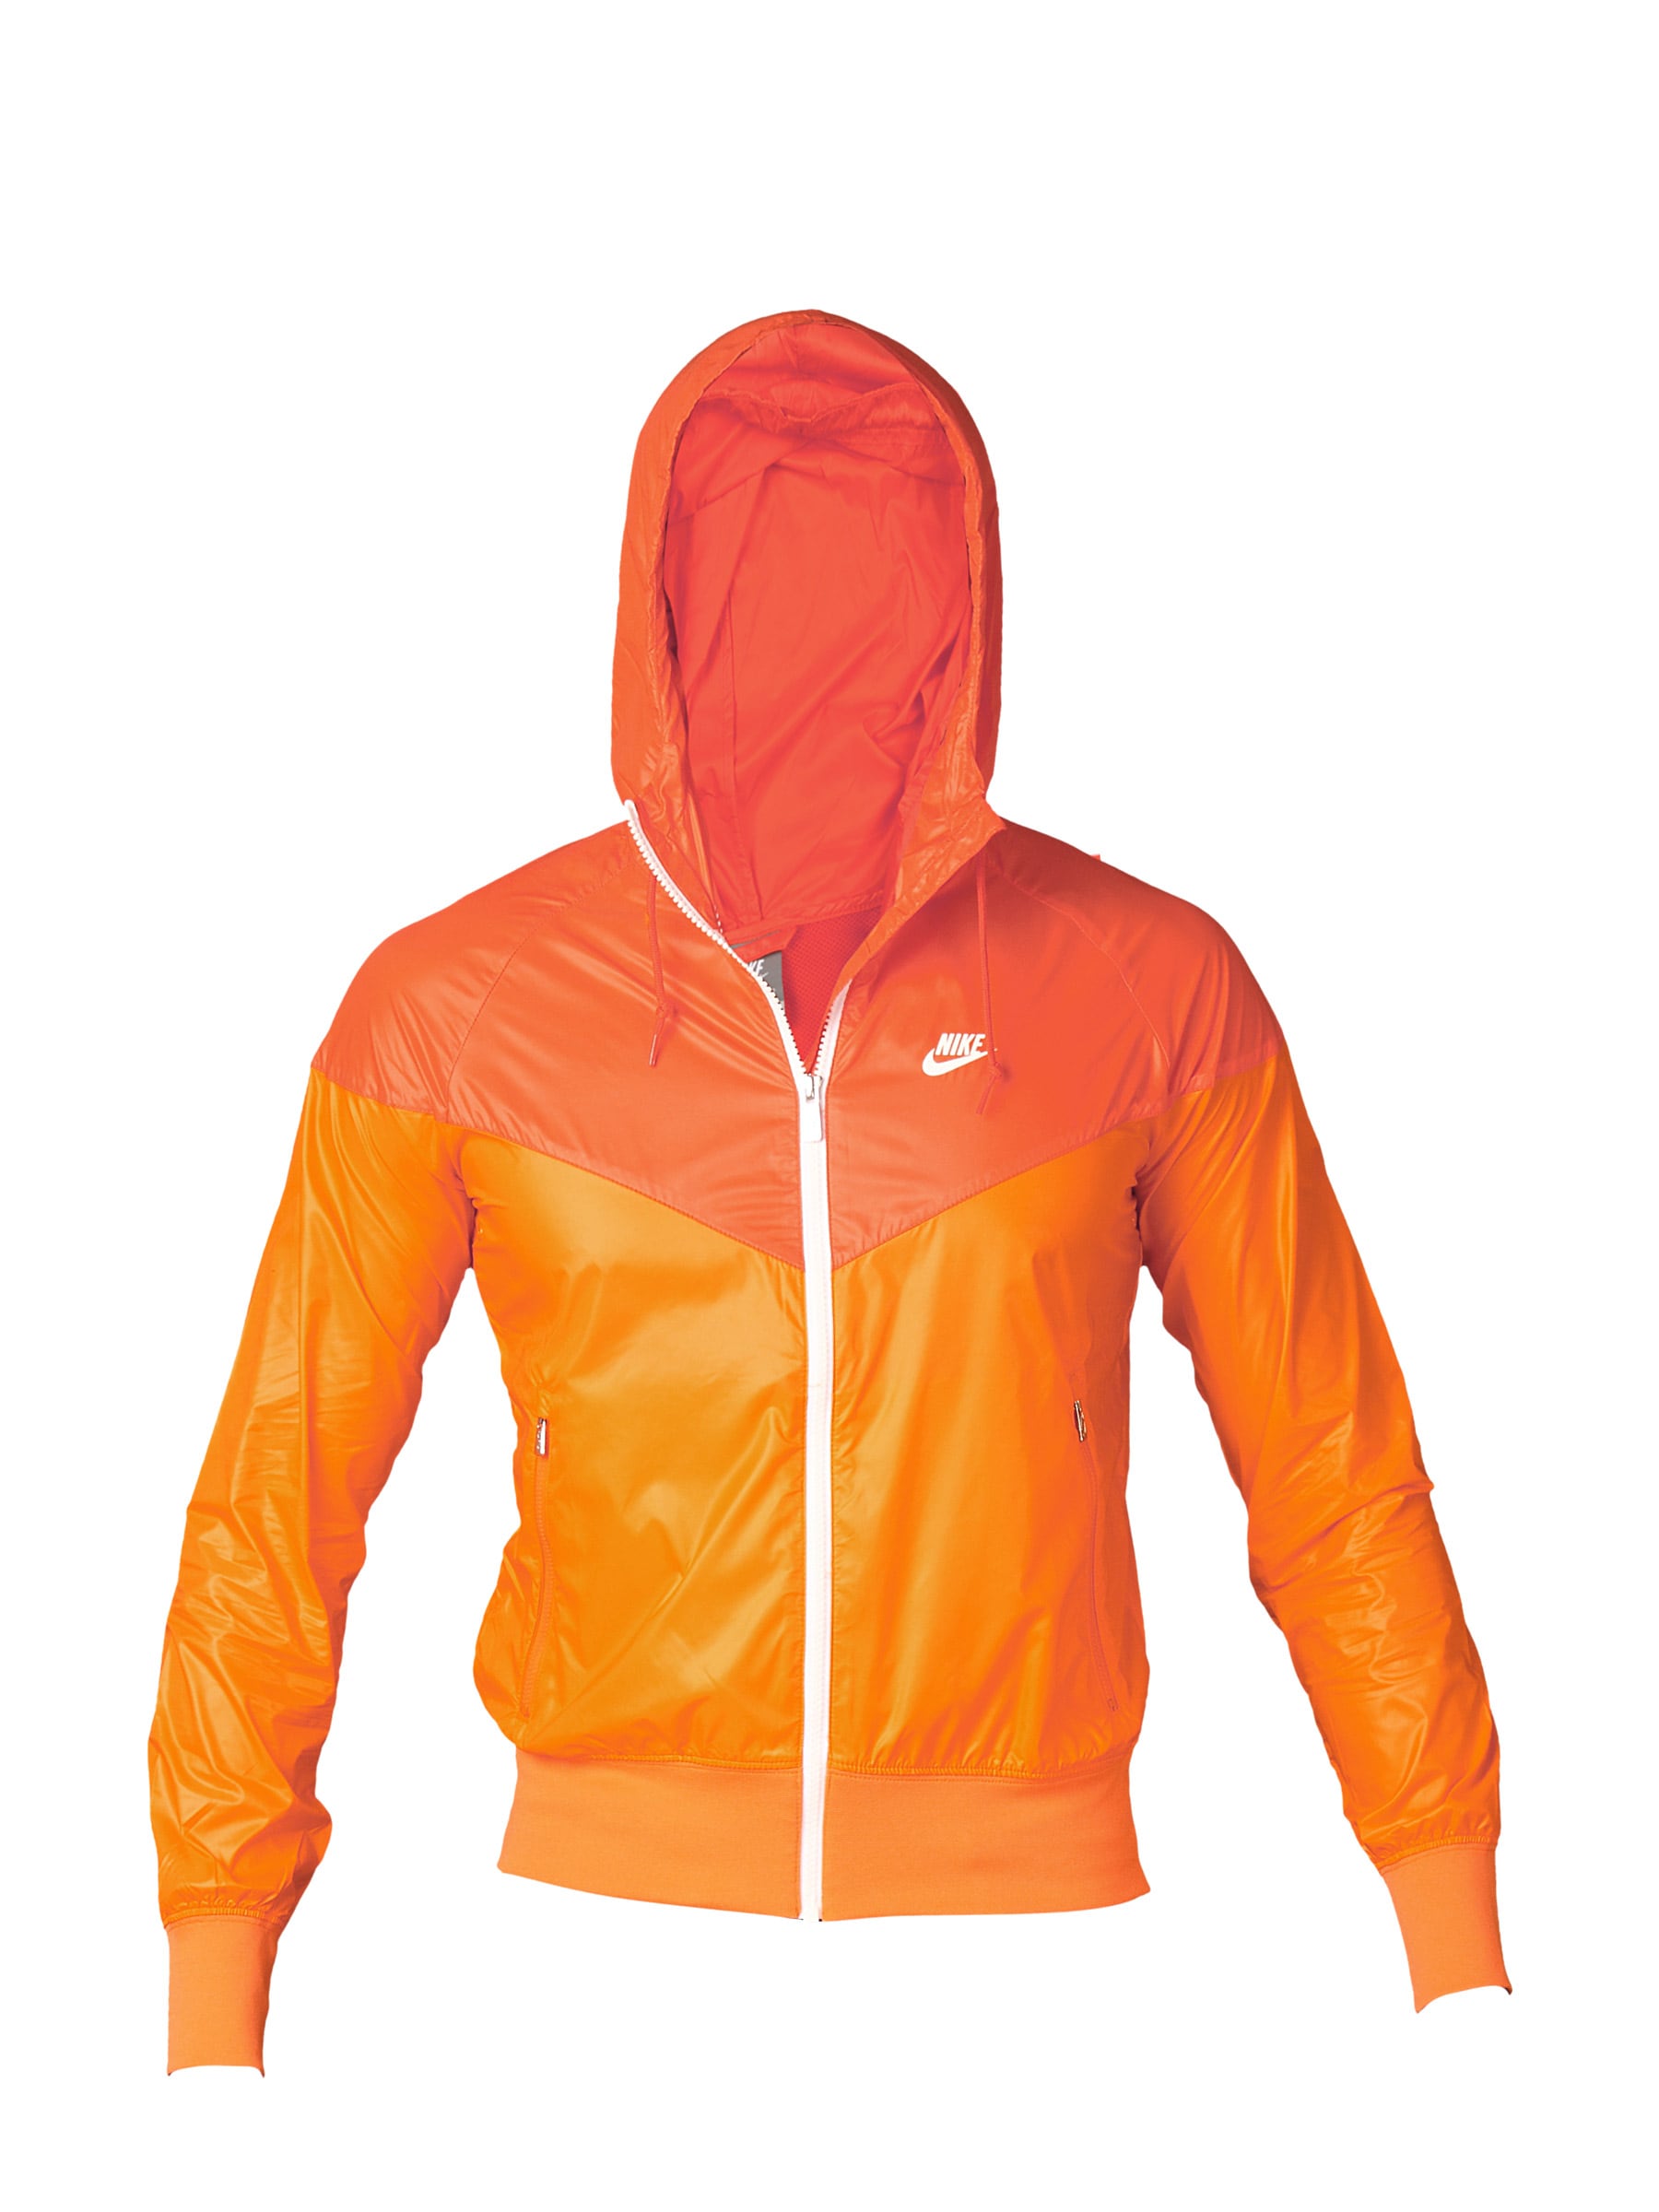 Nike Men Summerized Wind Runner Orange Jackets